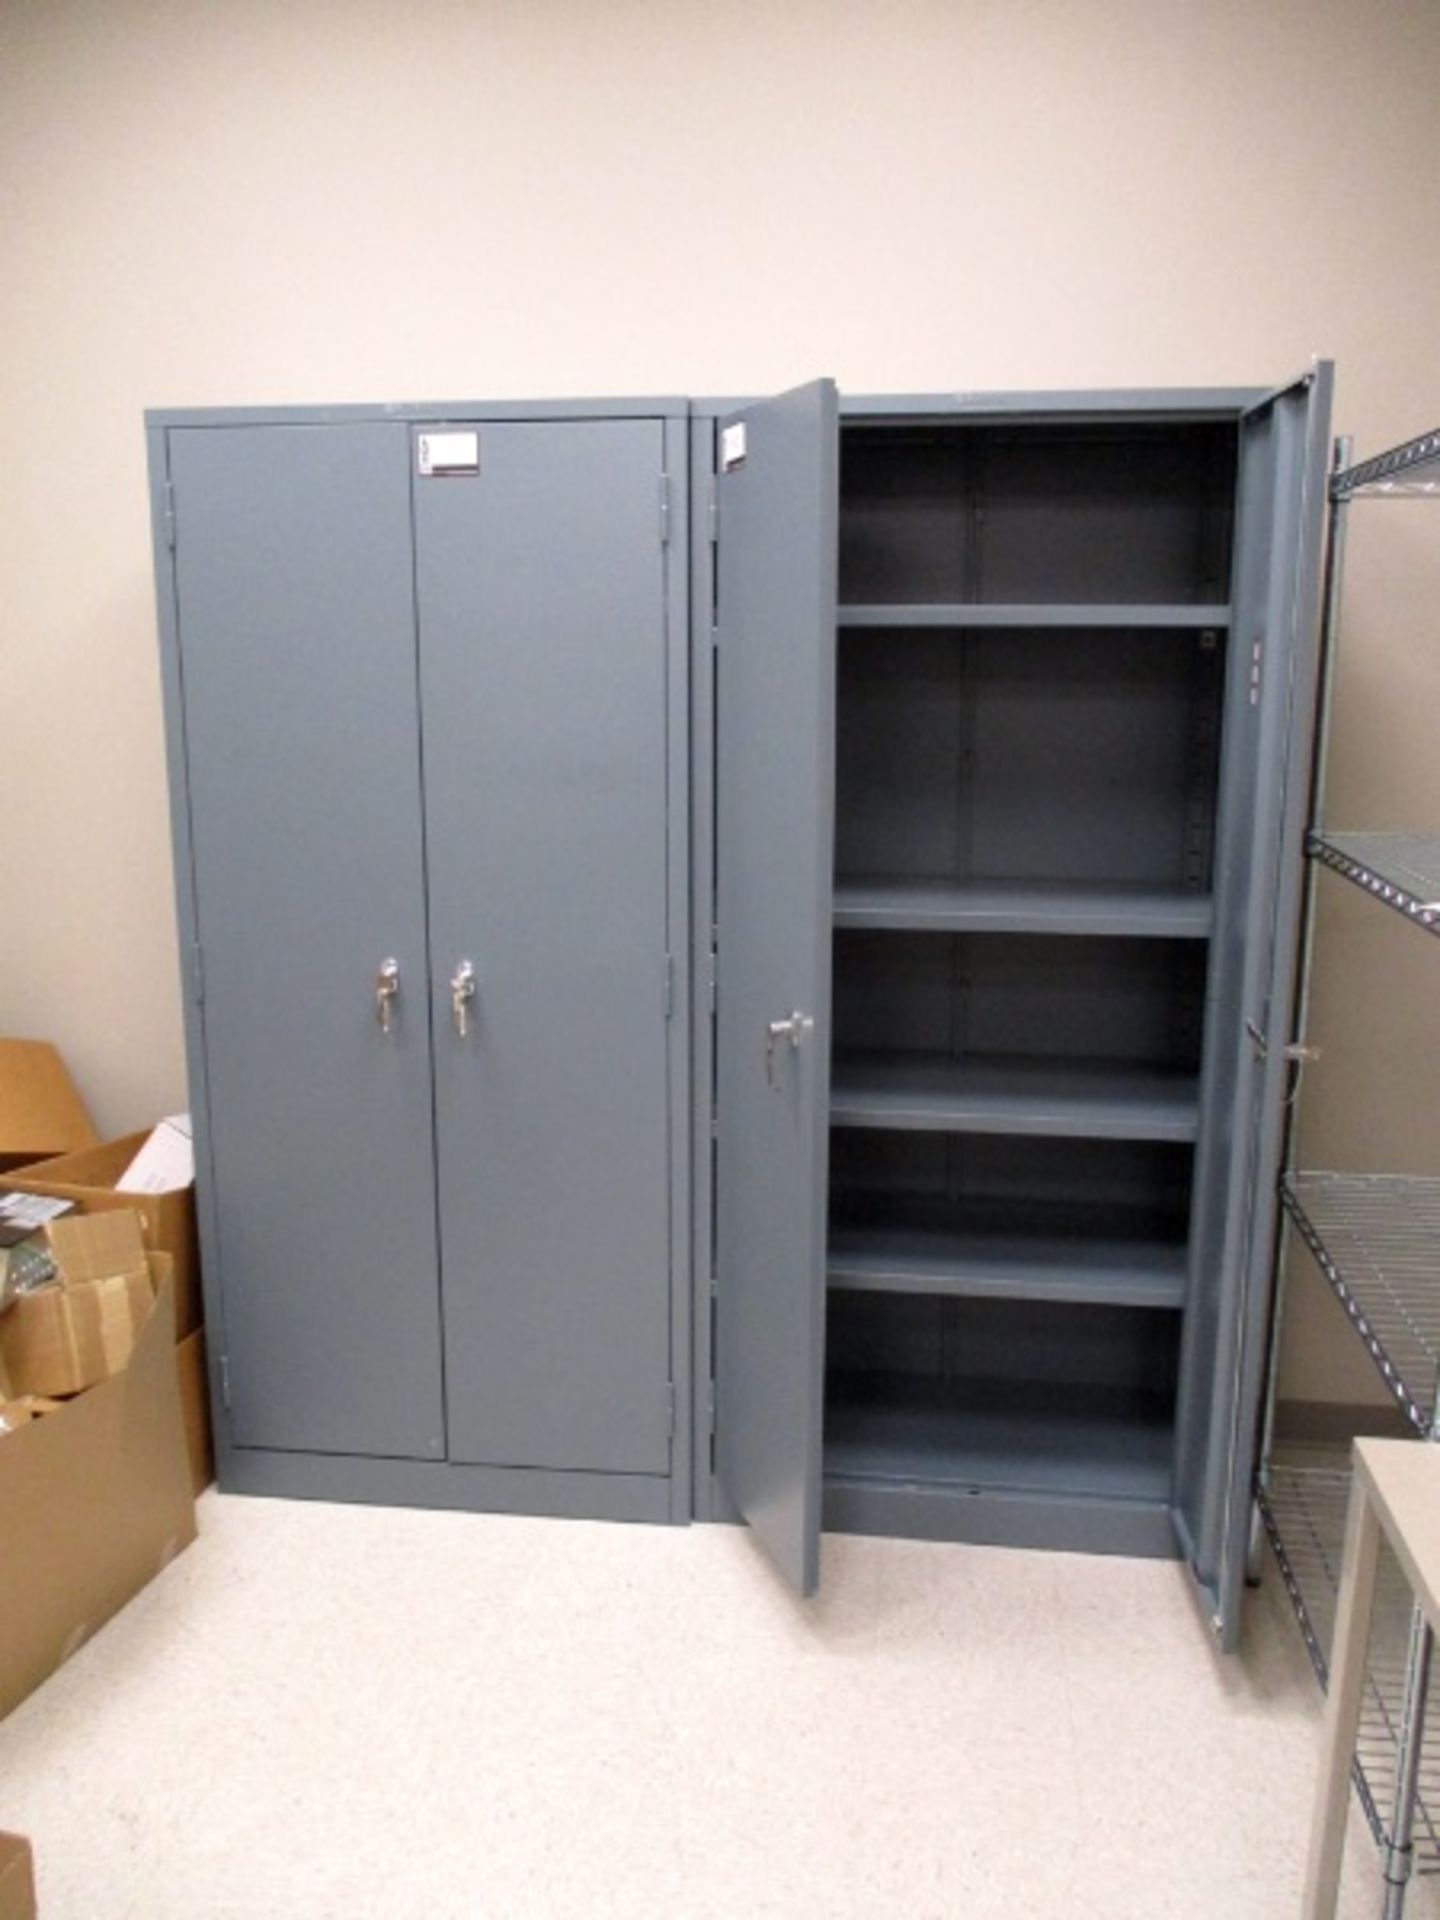 (2) Storage cabinets